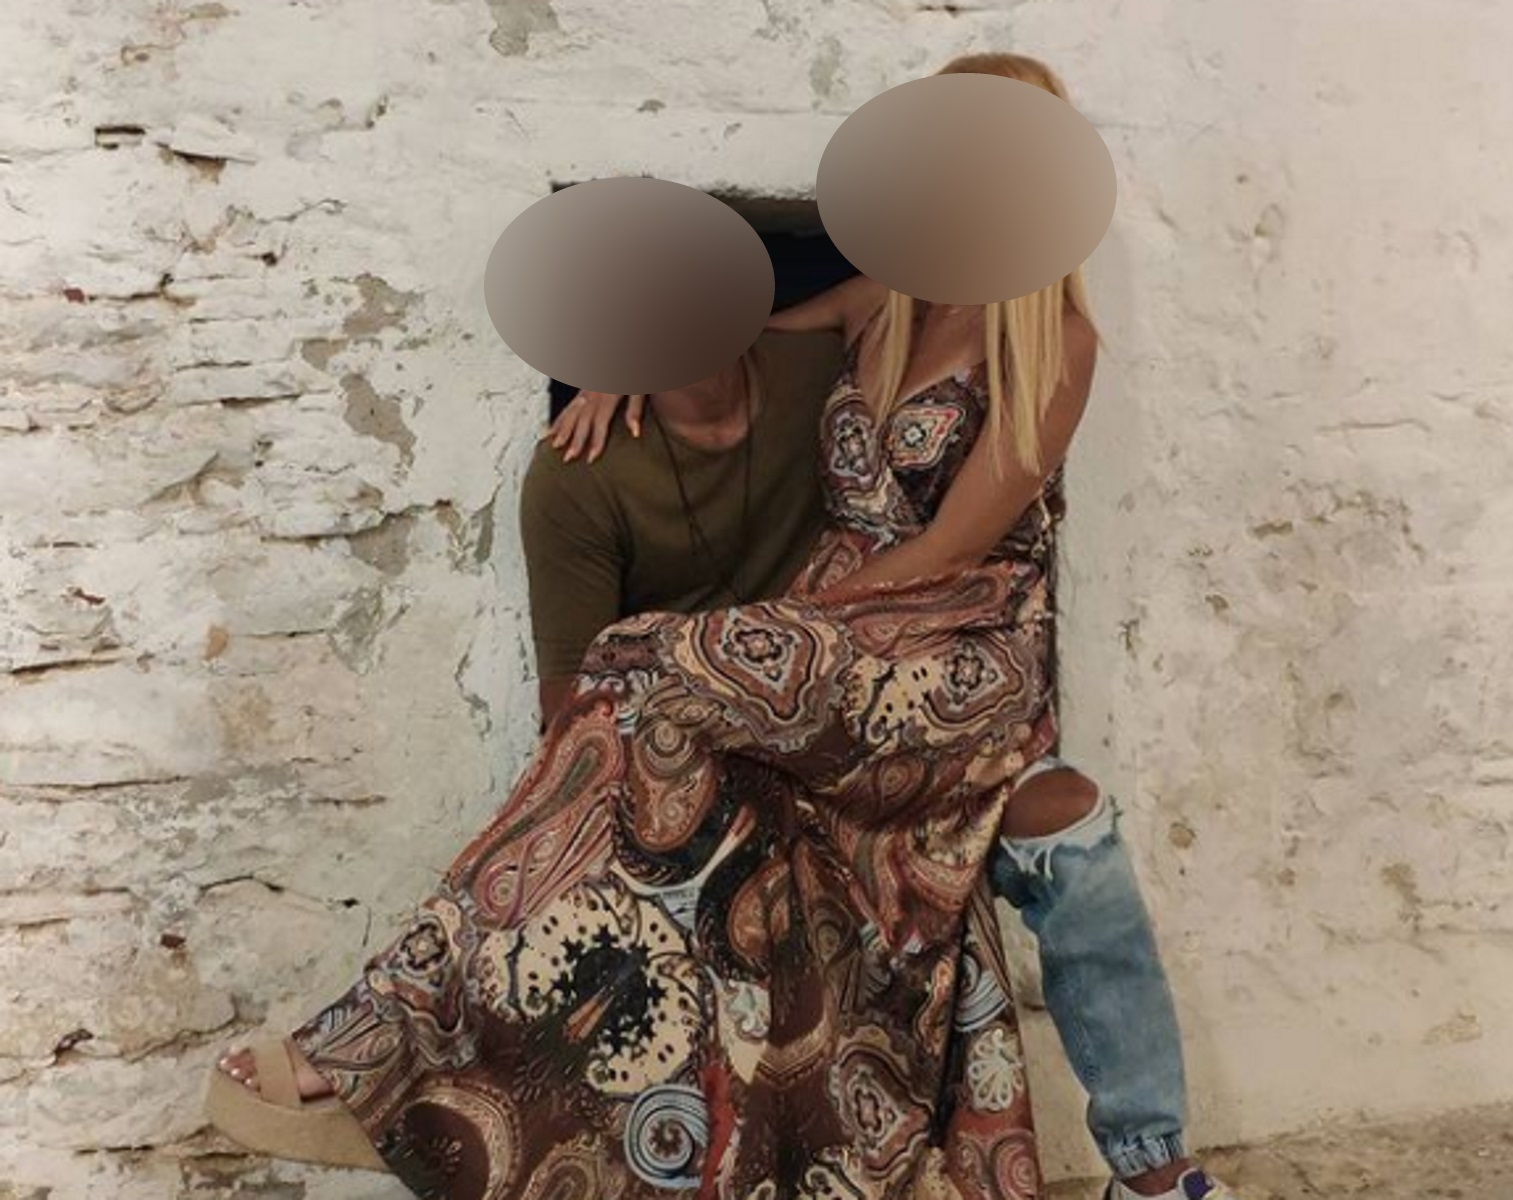 Σύλληψη μοντέλου με κοκαΐνη: Η 29χρονη και ο σύντροφός της “σπάνε” τη σιωπή τους στο Live News